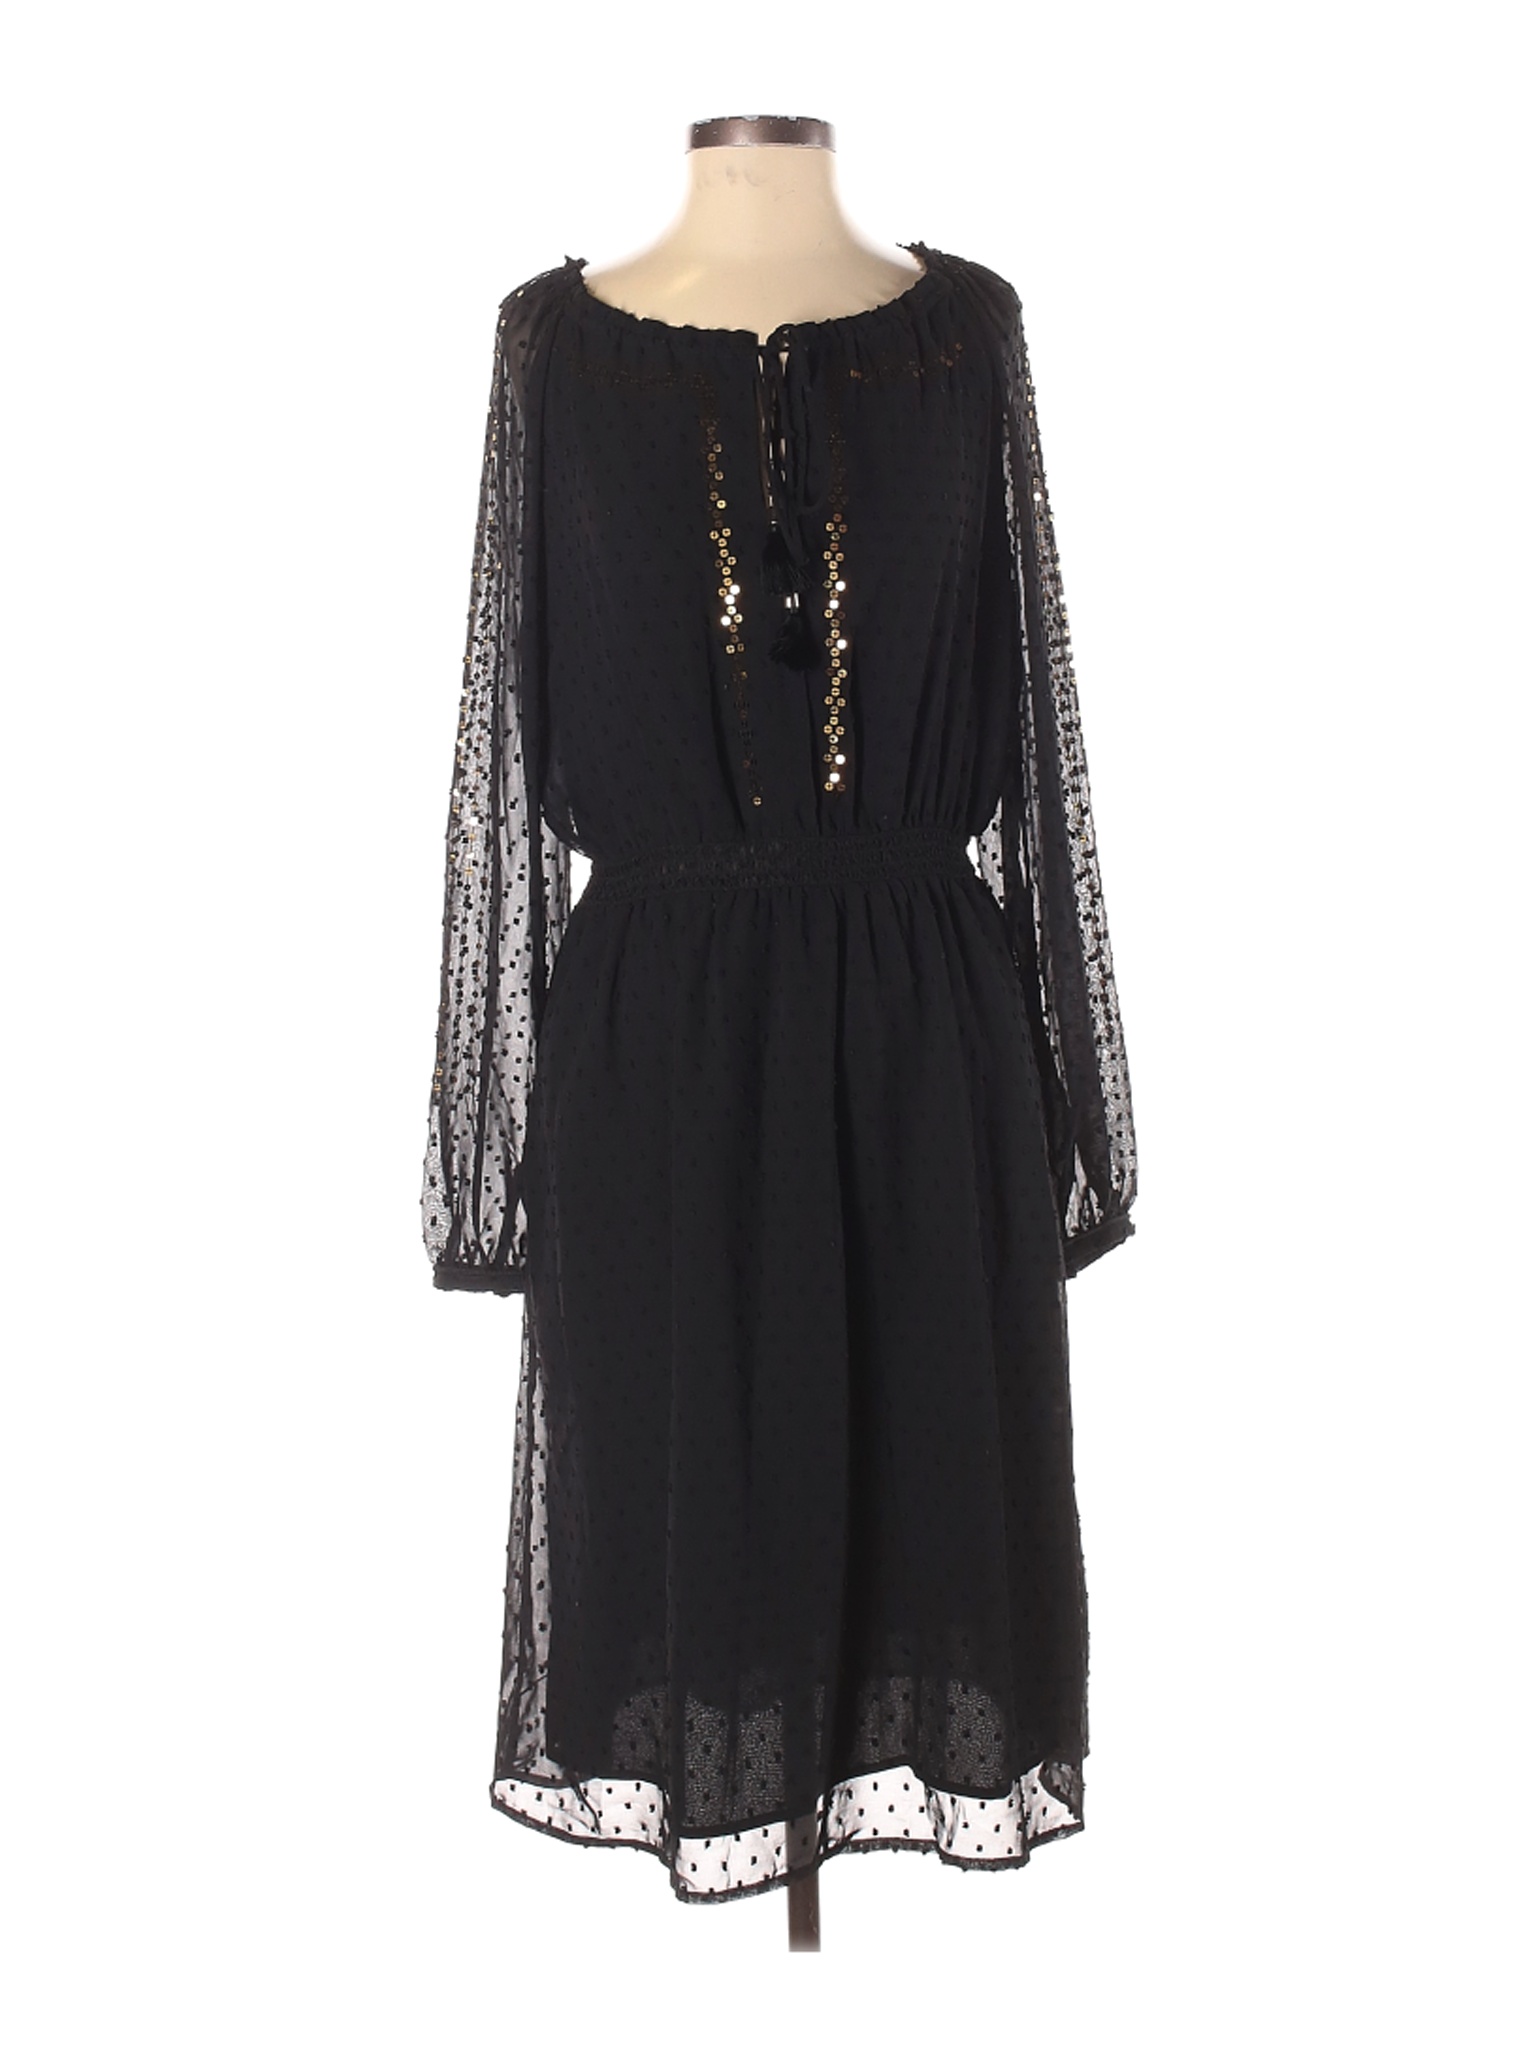 Altuzarra for Target Women Black Casual Dress M | eBay